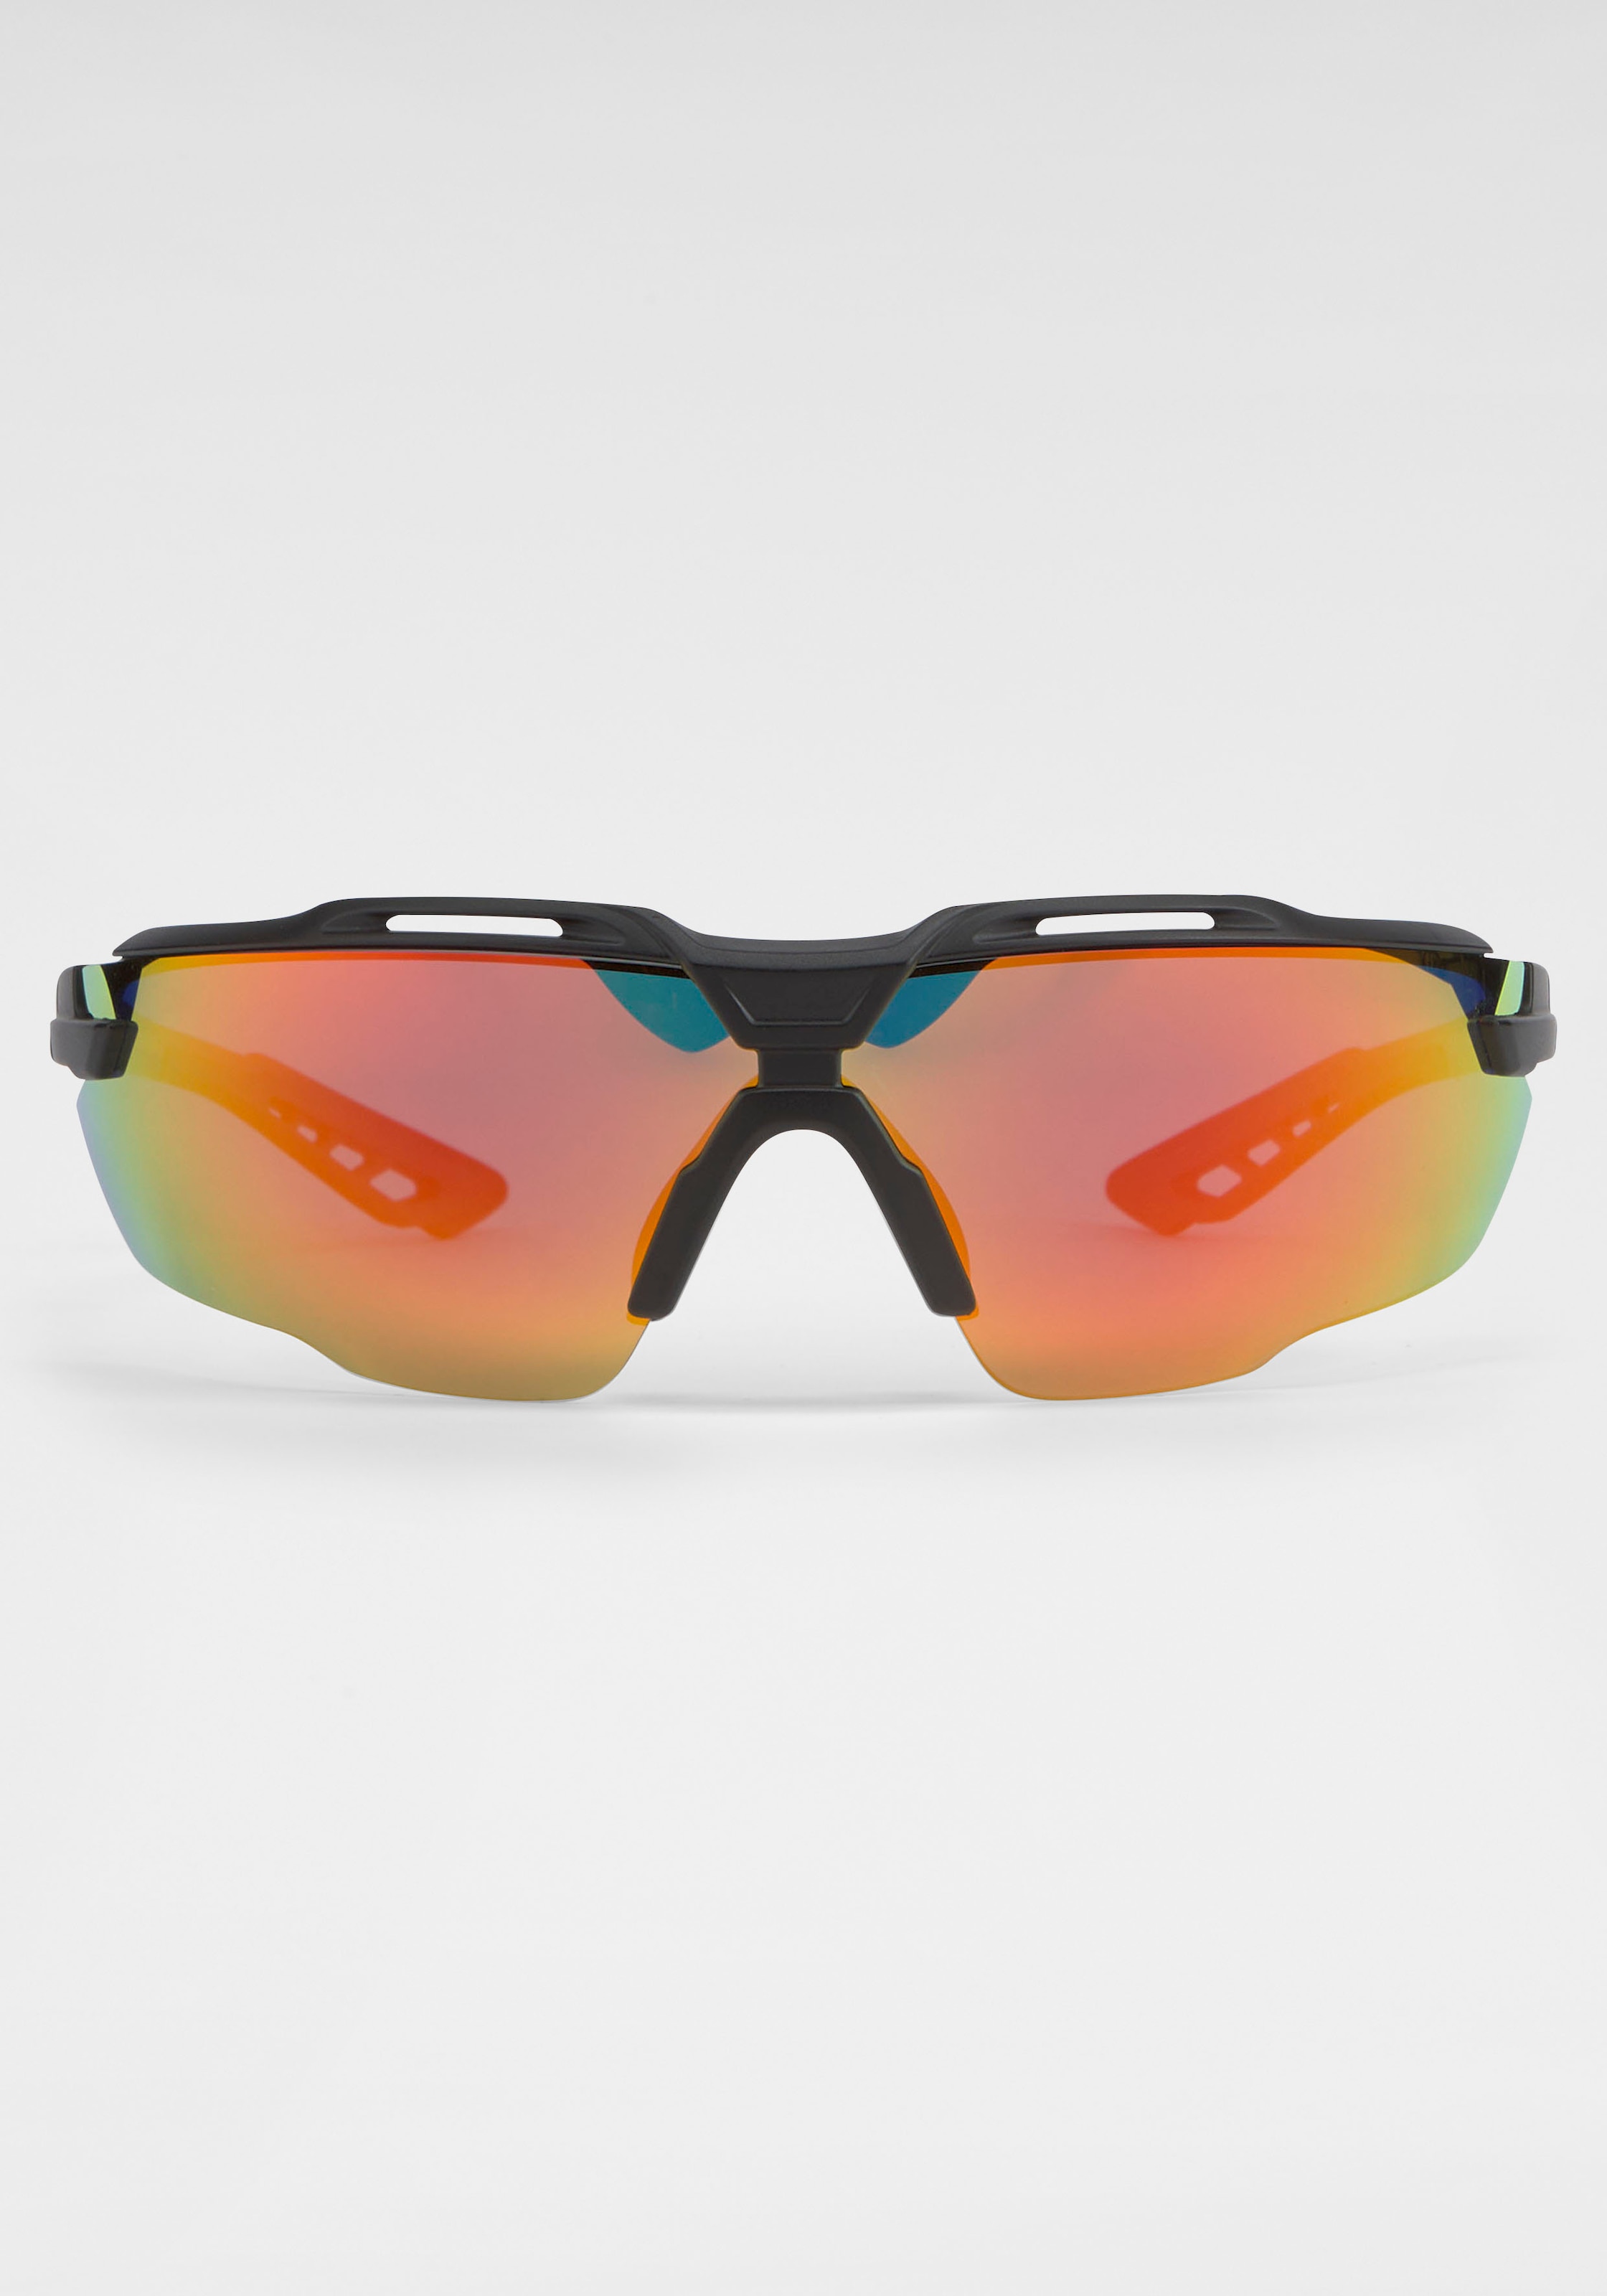 ♕ BACK IN BLACK Eyewear bestellen mit Gläsern gebogenen Sonnenbrille, versandkostenfrei